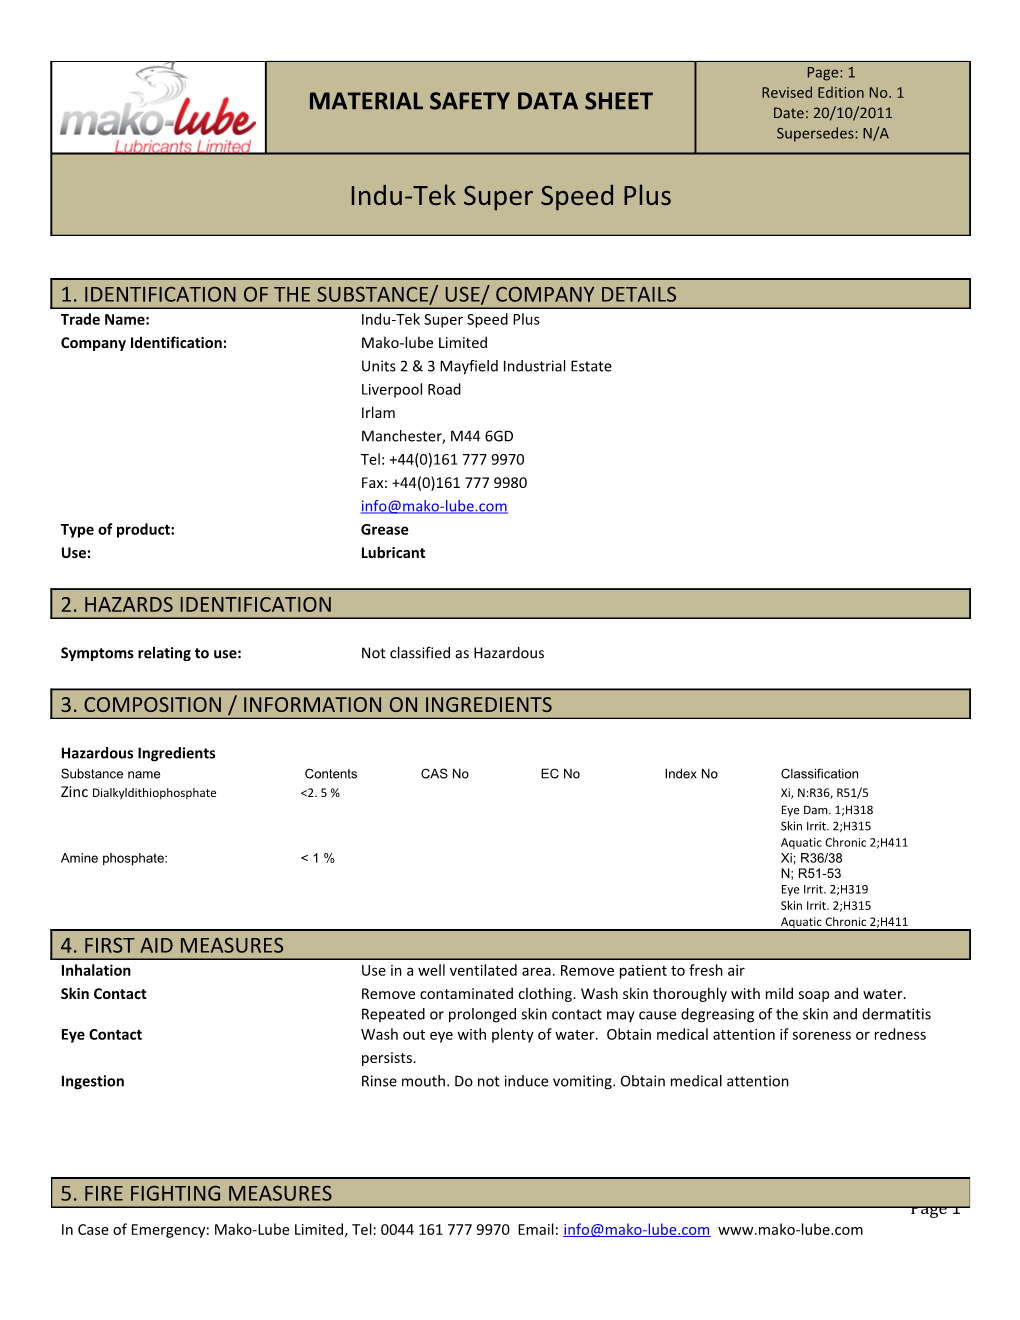 Trade Name: Indu-Tek Super Speed Plus